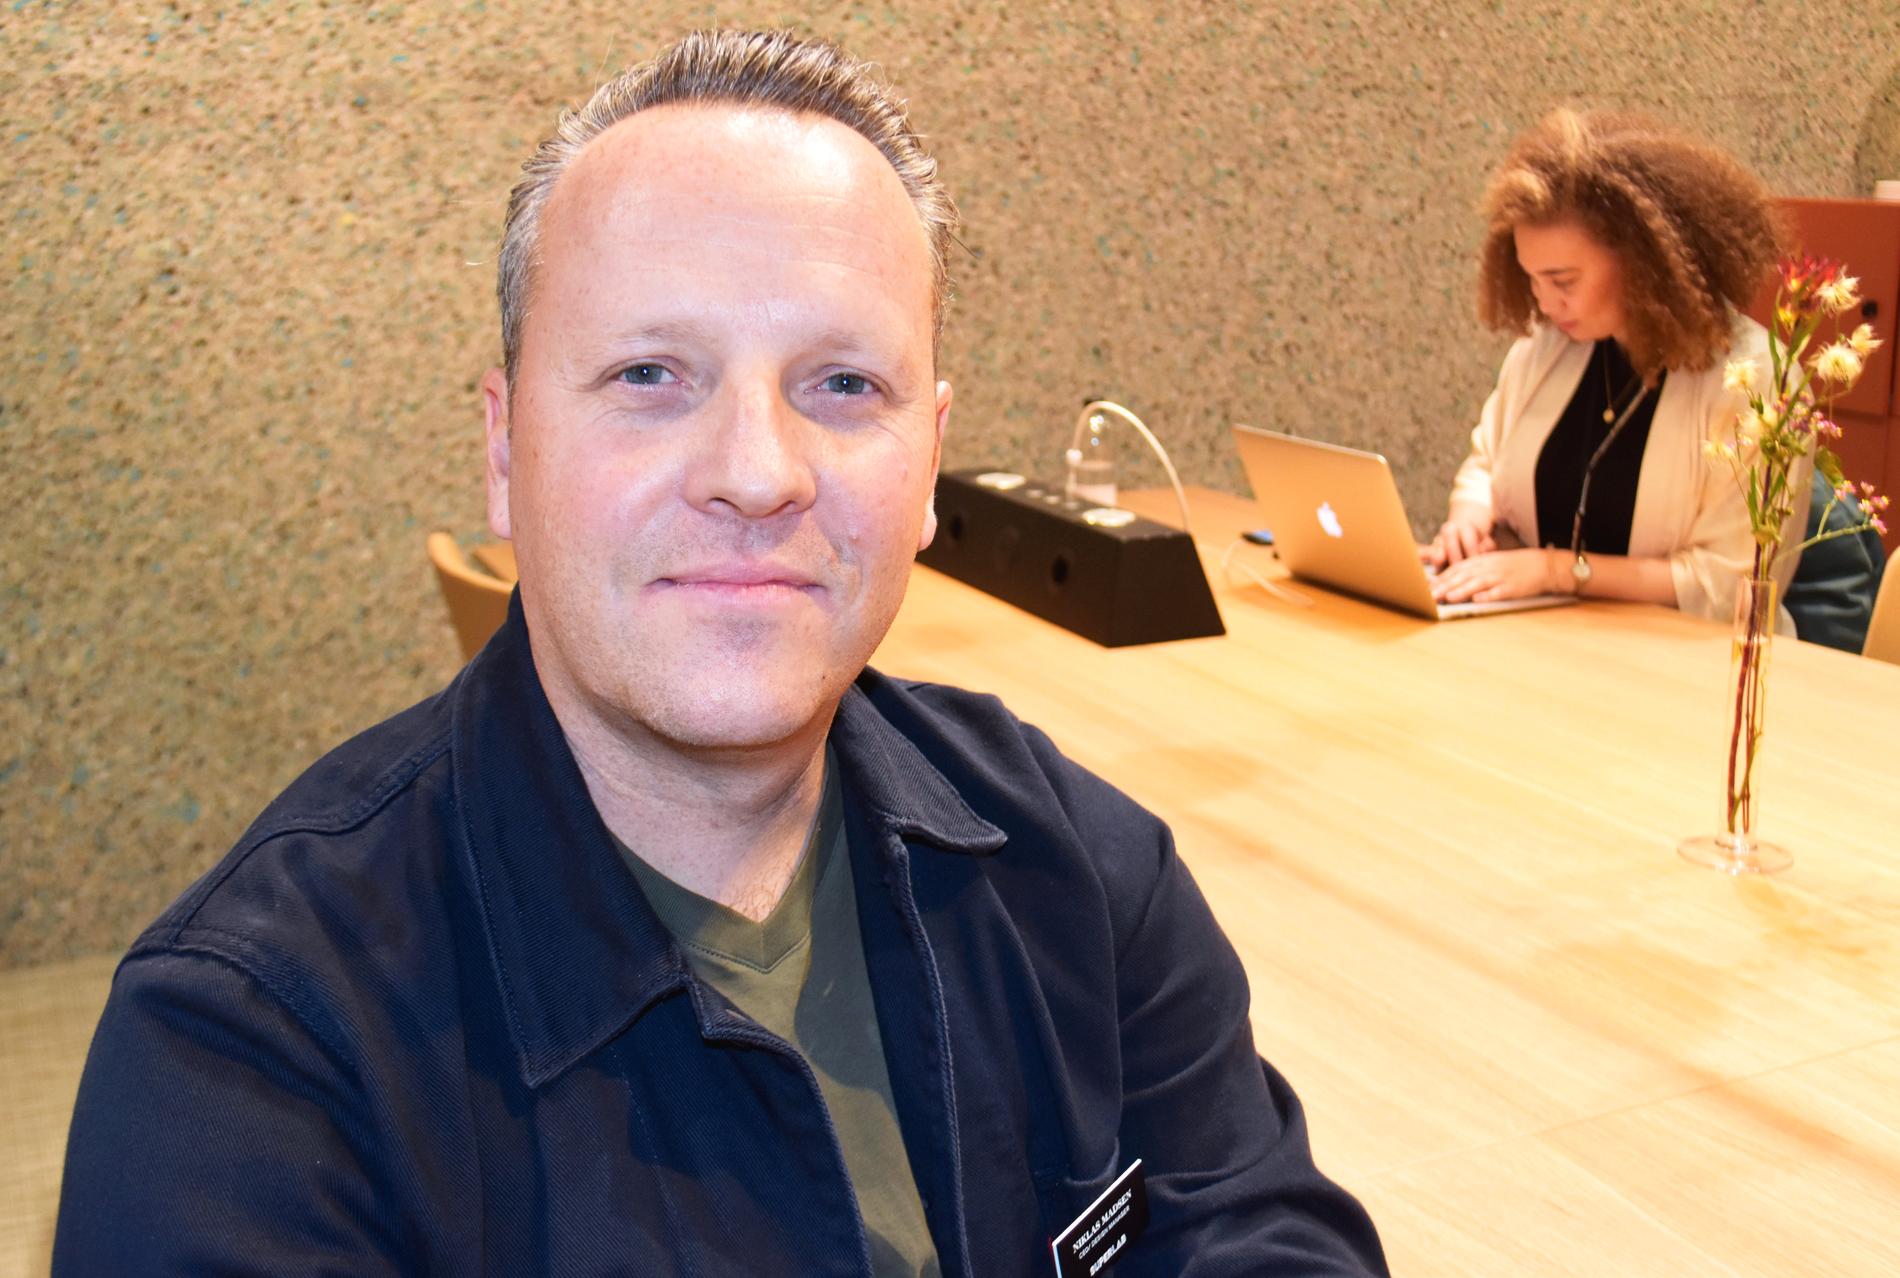 Niklas Madsen, industridesigner som grundat Superlab i Helsingborg, håller tillsamman med bland andra möbeltillverkaren Edsbyn på att ta reda på hur framtidens arbetsplats ser ut.